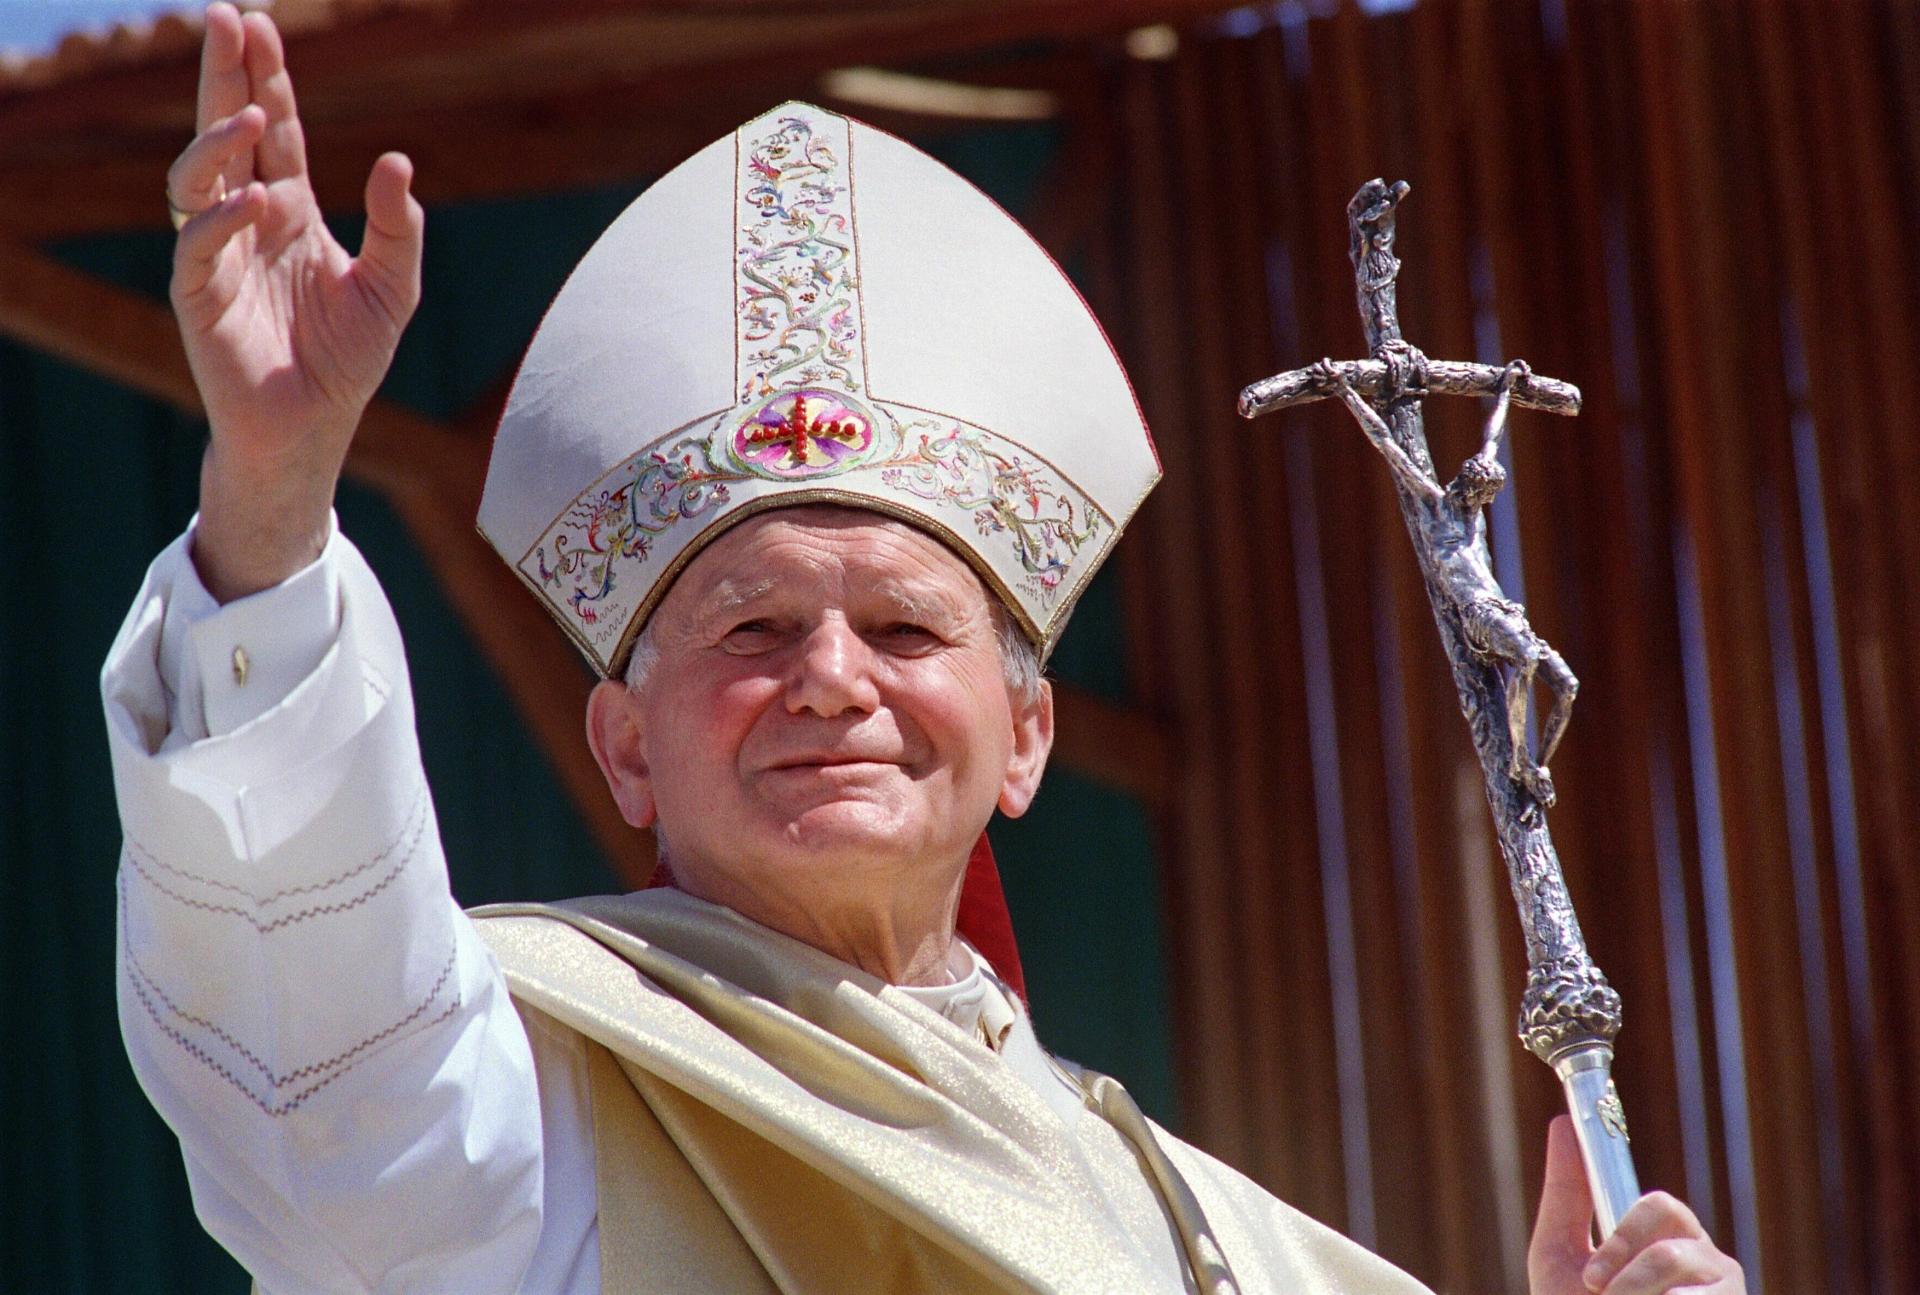 Pápež Ján Pavol II. ešte ako kardinál zakrýval zneužívanie detí kňazmi